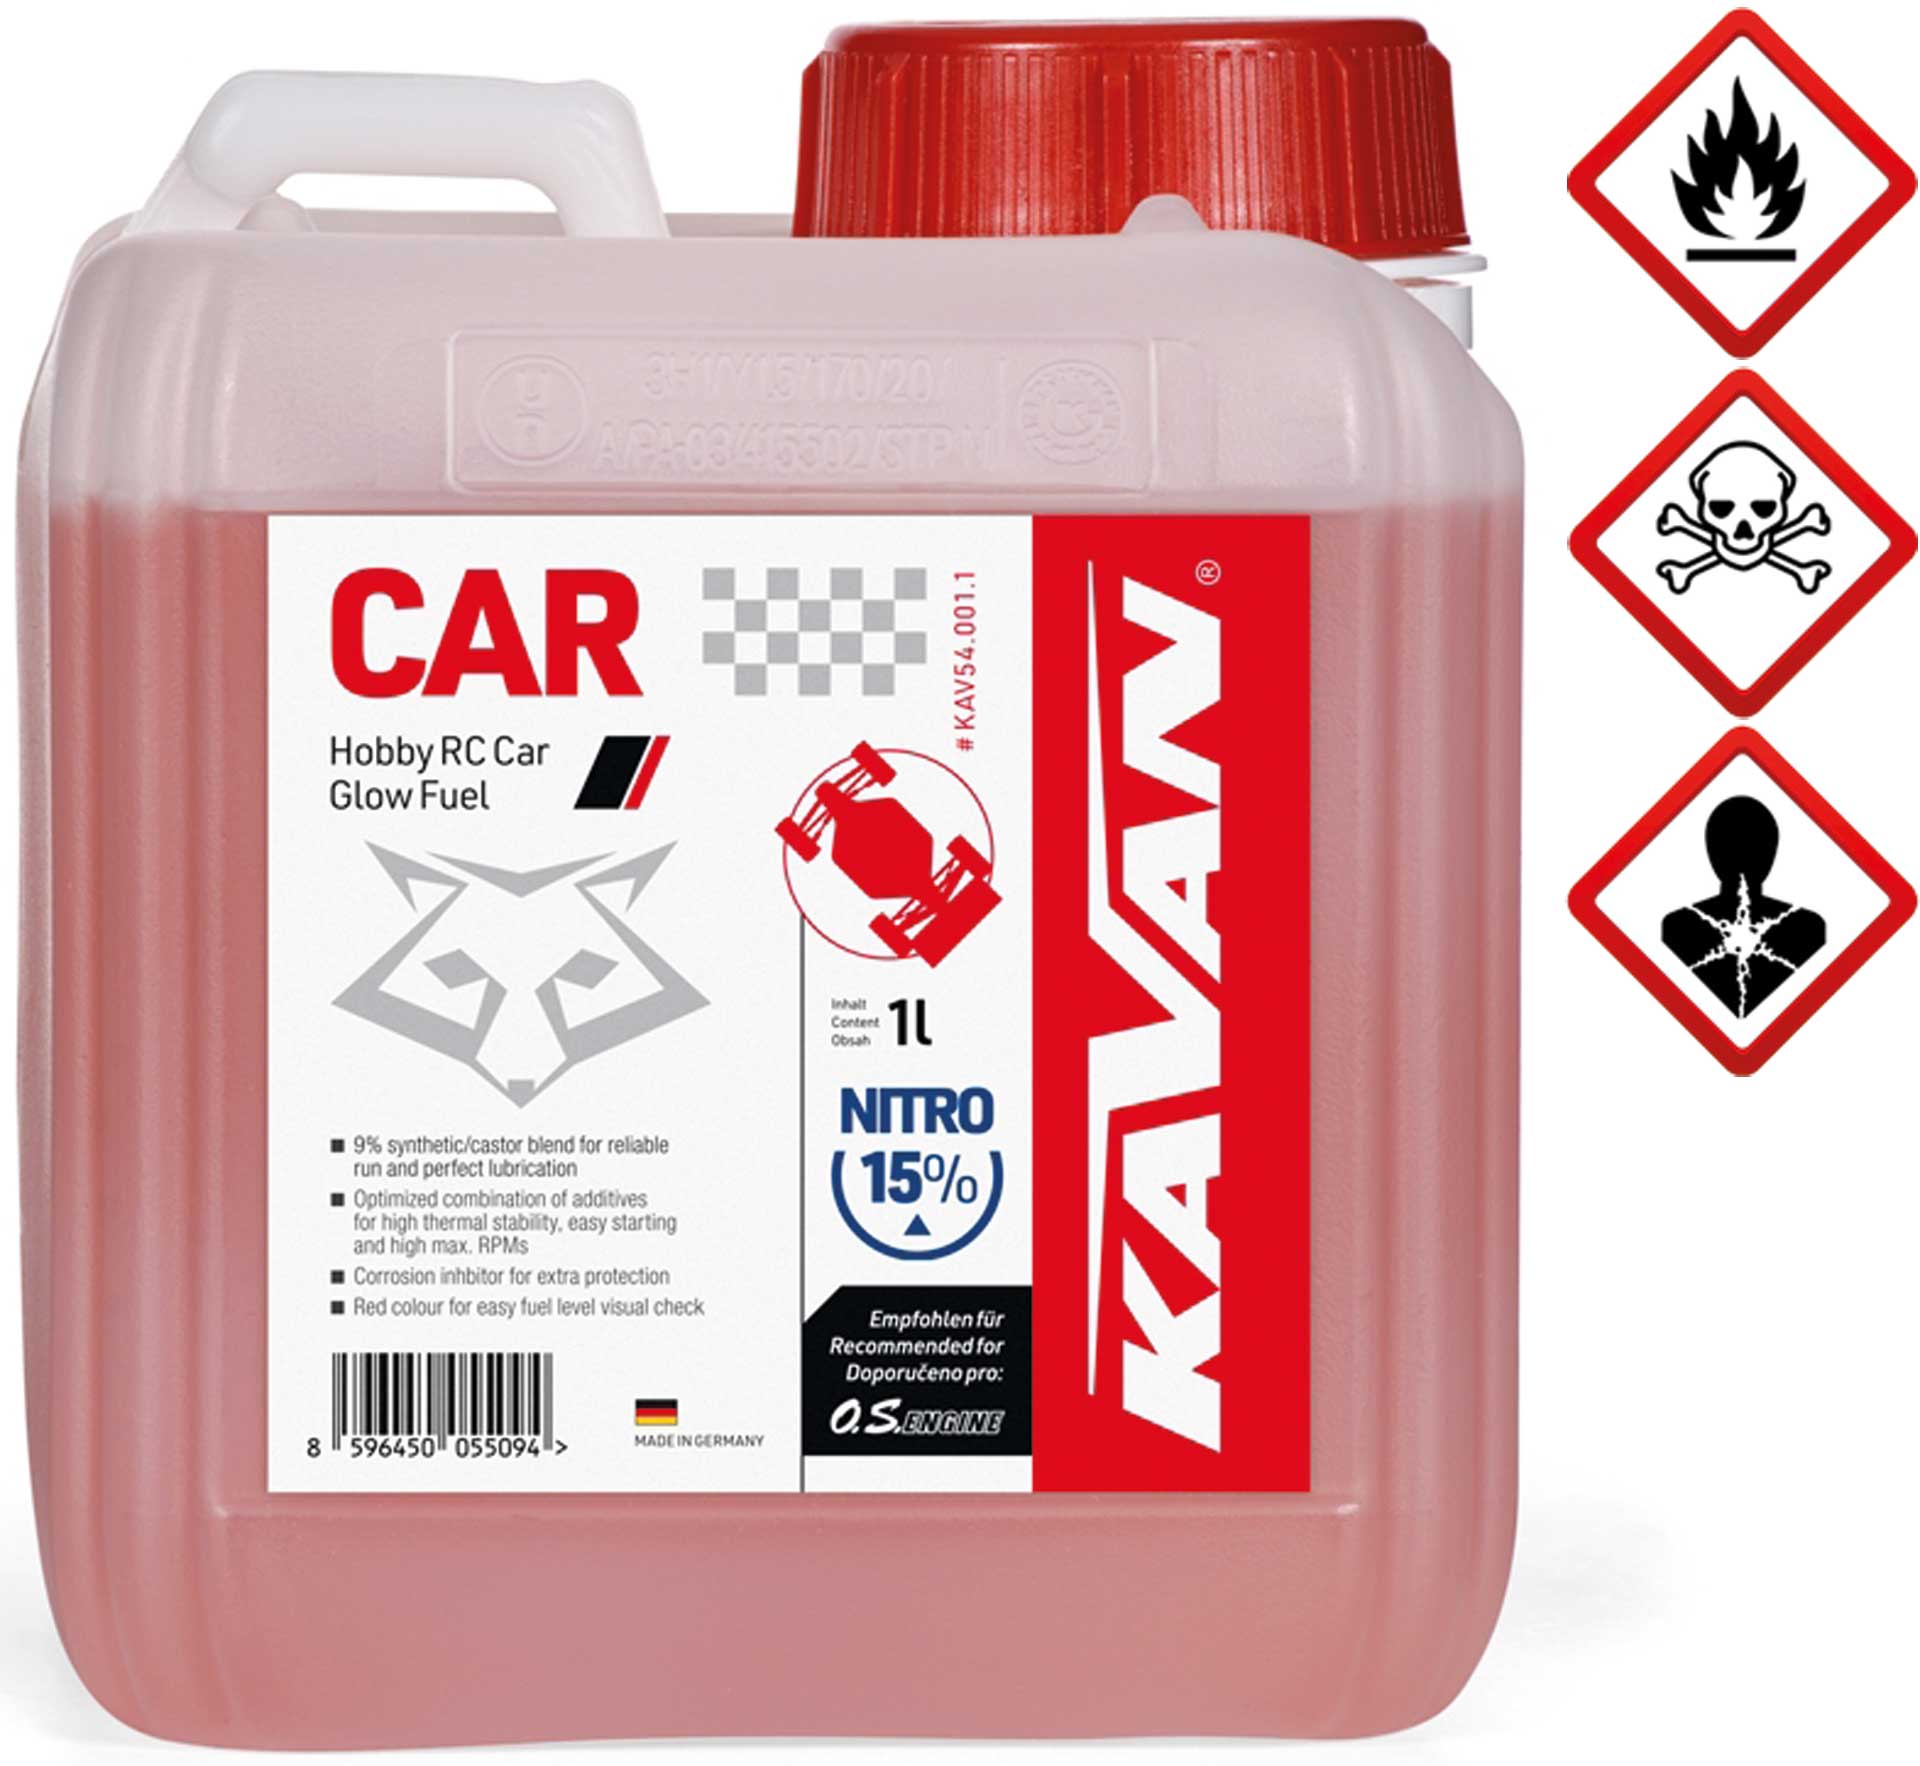 KAVAN Car 15% nitro 1 Liter Kraftstoff, Sprit, Treibstoff für Glühzünder-Motoren